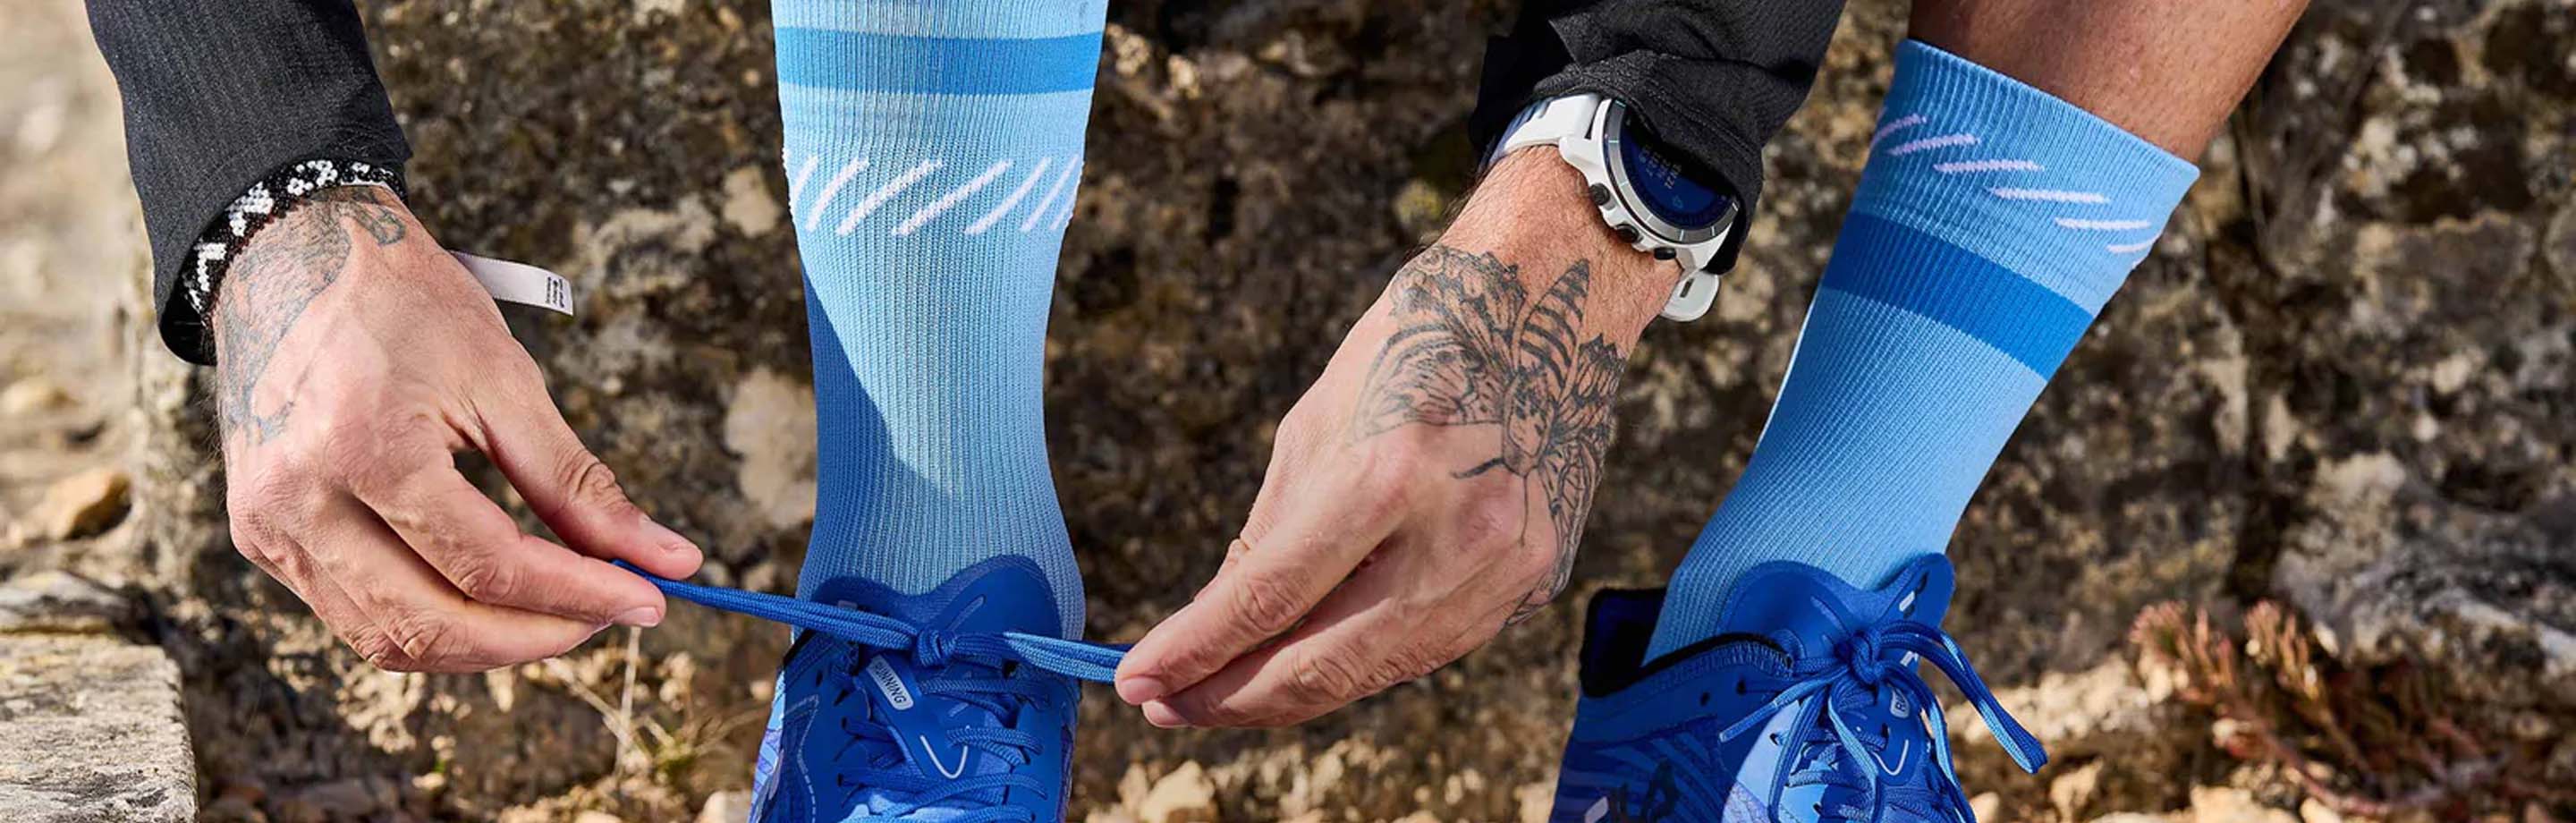 Chaussettes INCYLENCE pour le running, le cyclisme & le triathlon avec un design spécial